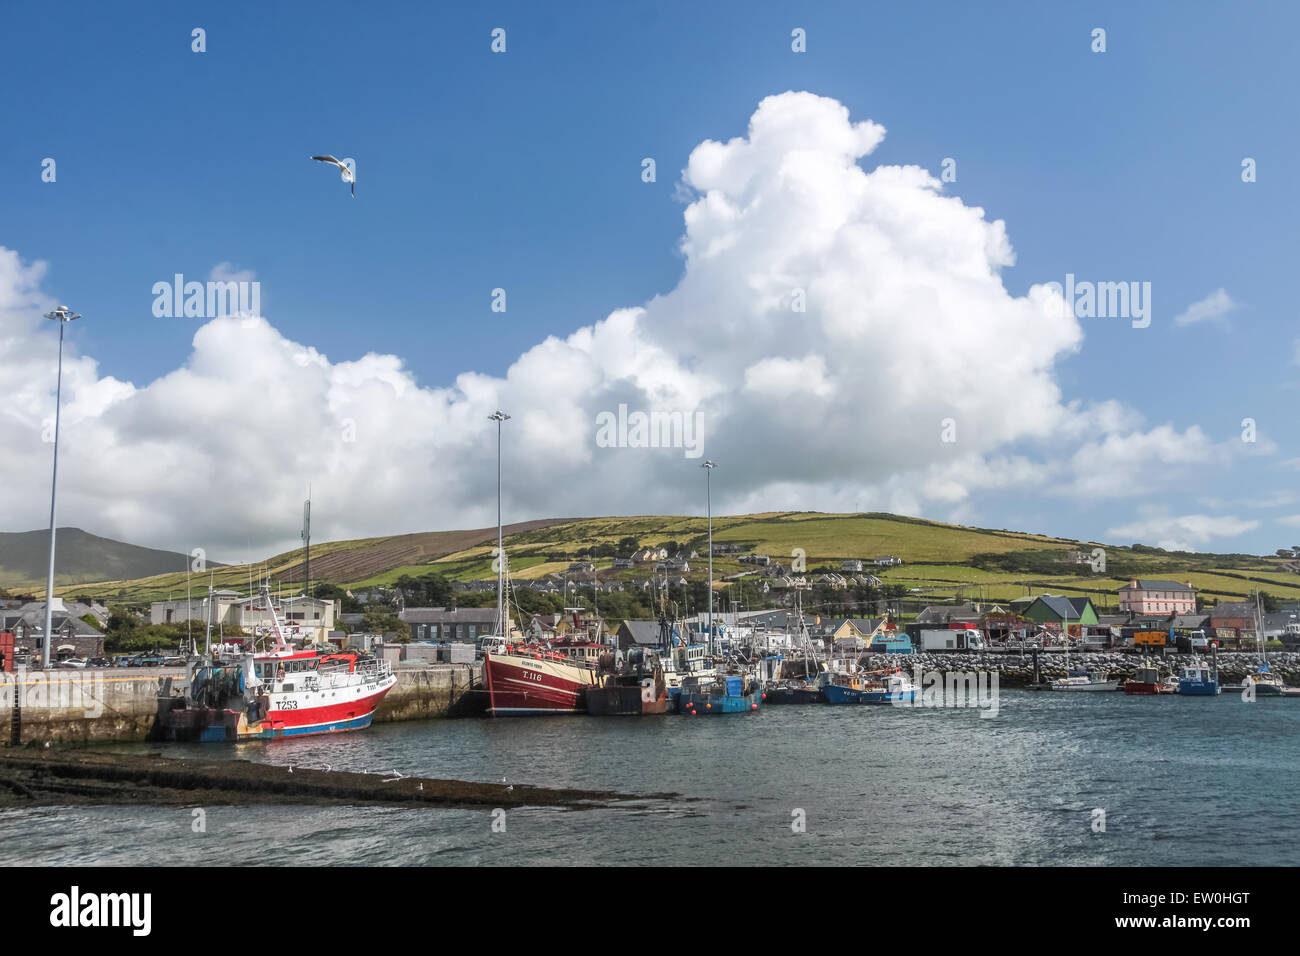 Fishing harbor of Dingle, County Kerry, Ireland Stock Photo